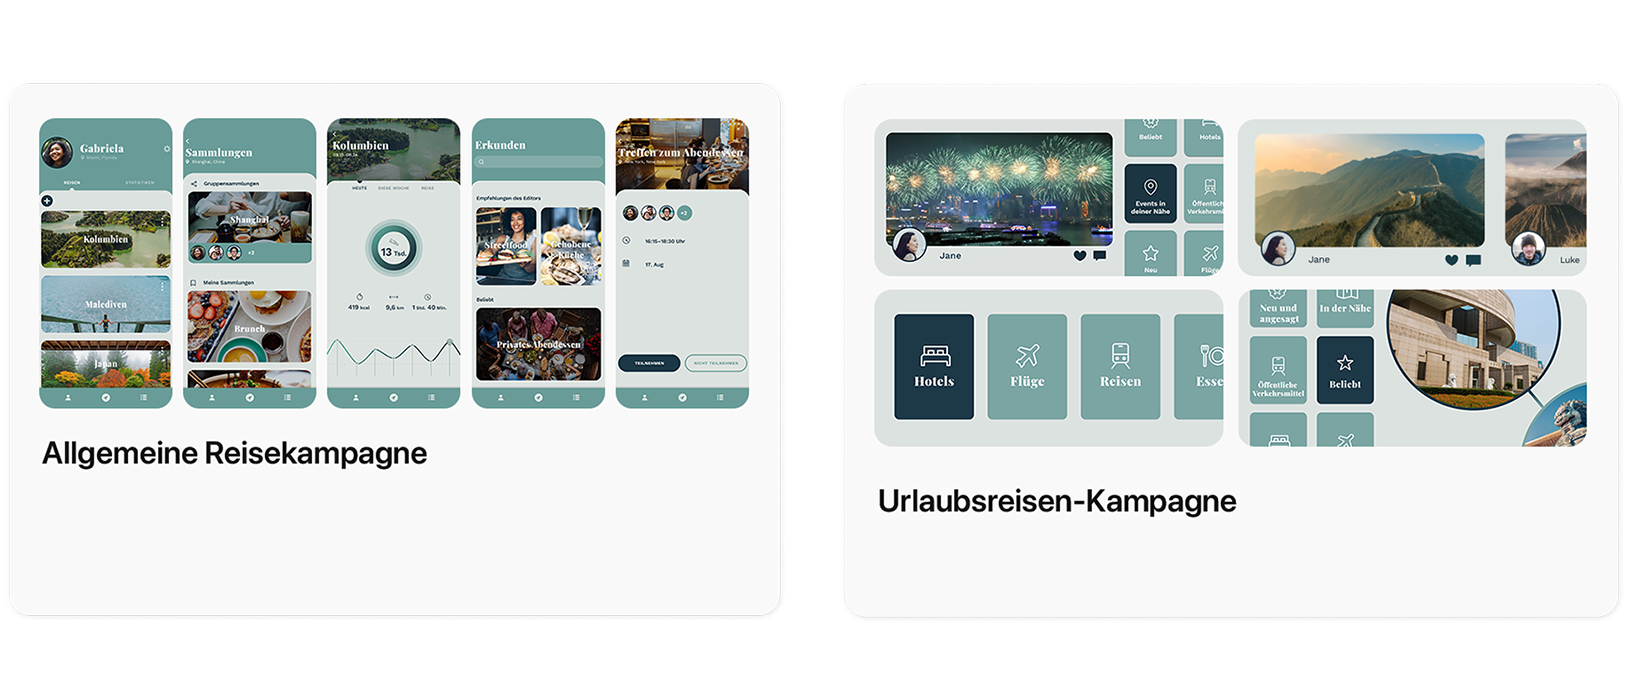 Zwei Beispiele für Anzeigen im Tab „Heute“ für eine Beispiel-App namens TripTrek. Links ist eine allgemeine Reisekampagne mit Bildern dargestellt, die einen Überblick über die App bieten. Rechts sieht man eine Urlaubsreisekampagne, die während der Aktionszeiträume im Laufe des Jahres laufen könnte.